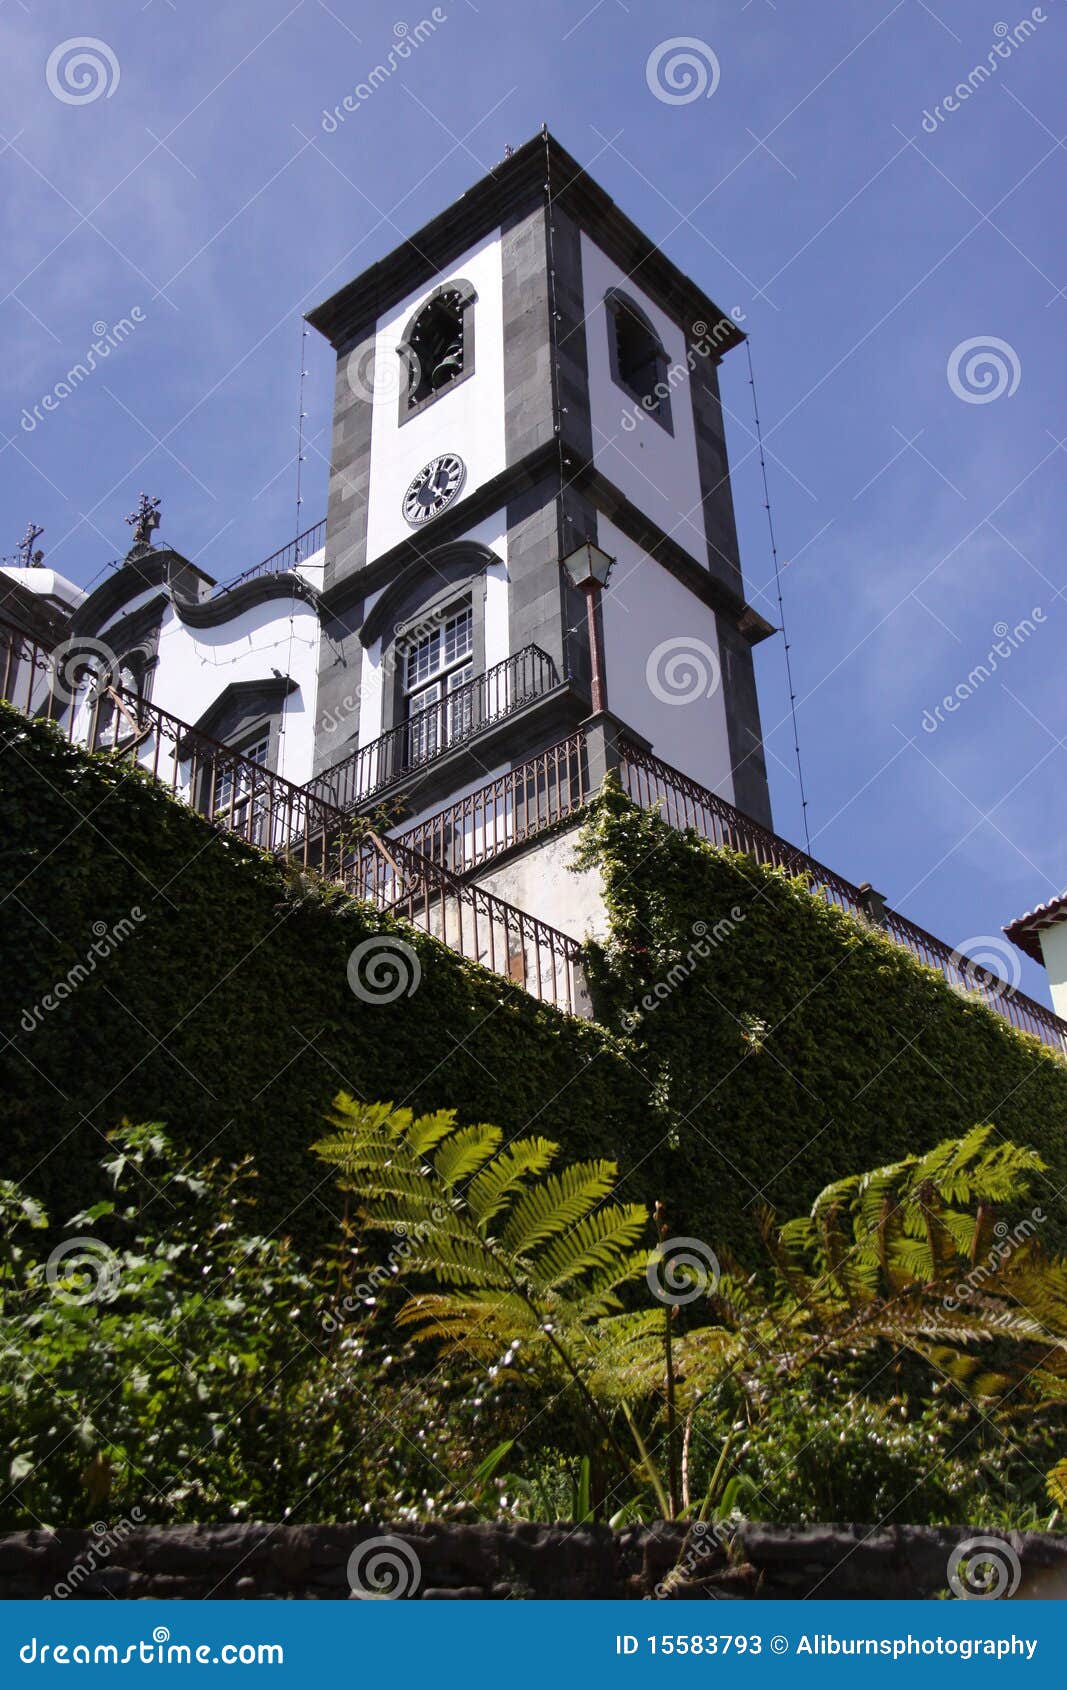 madeira, the church of nossa senhora